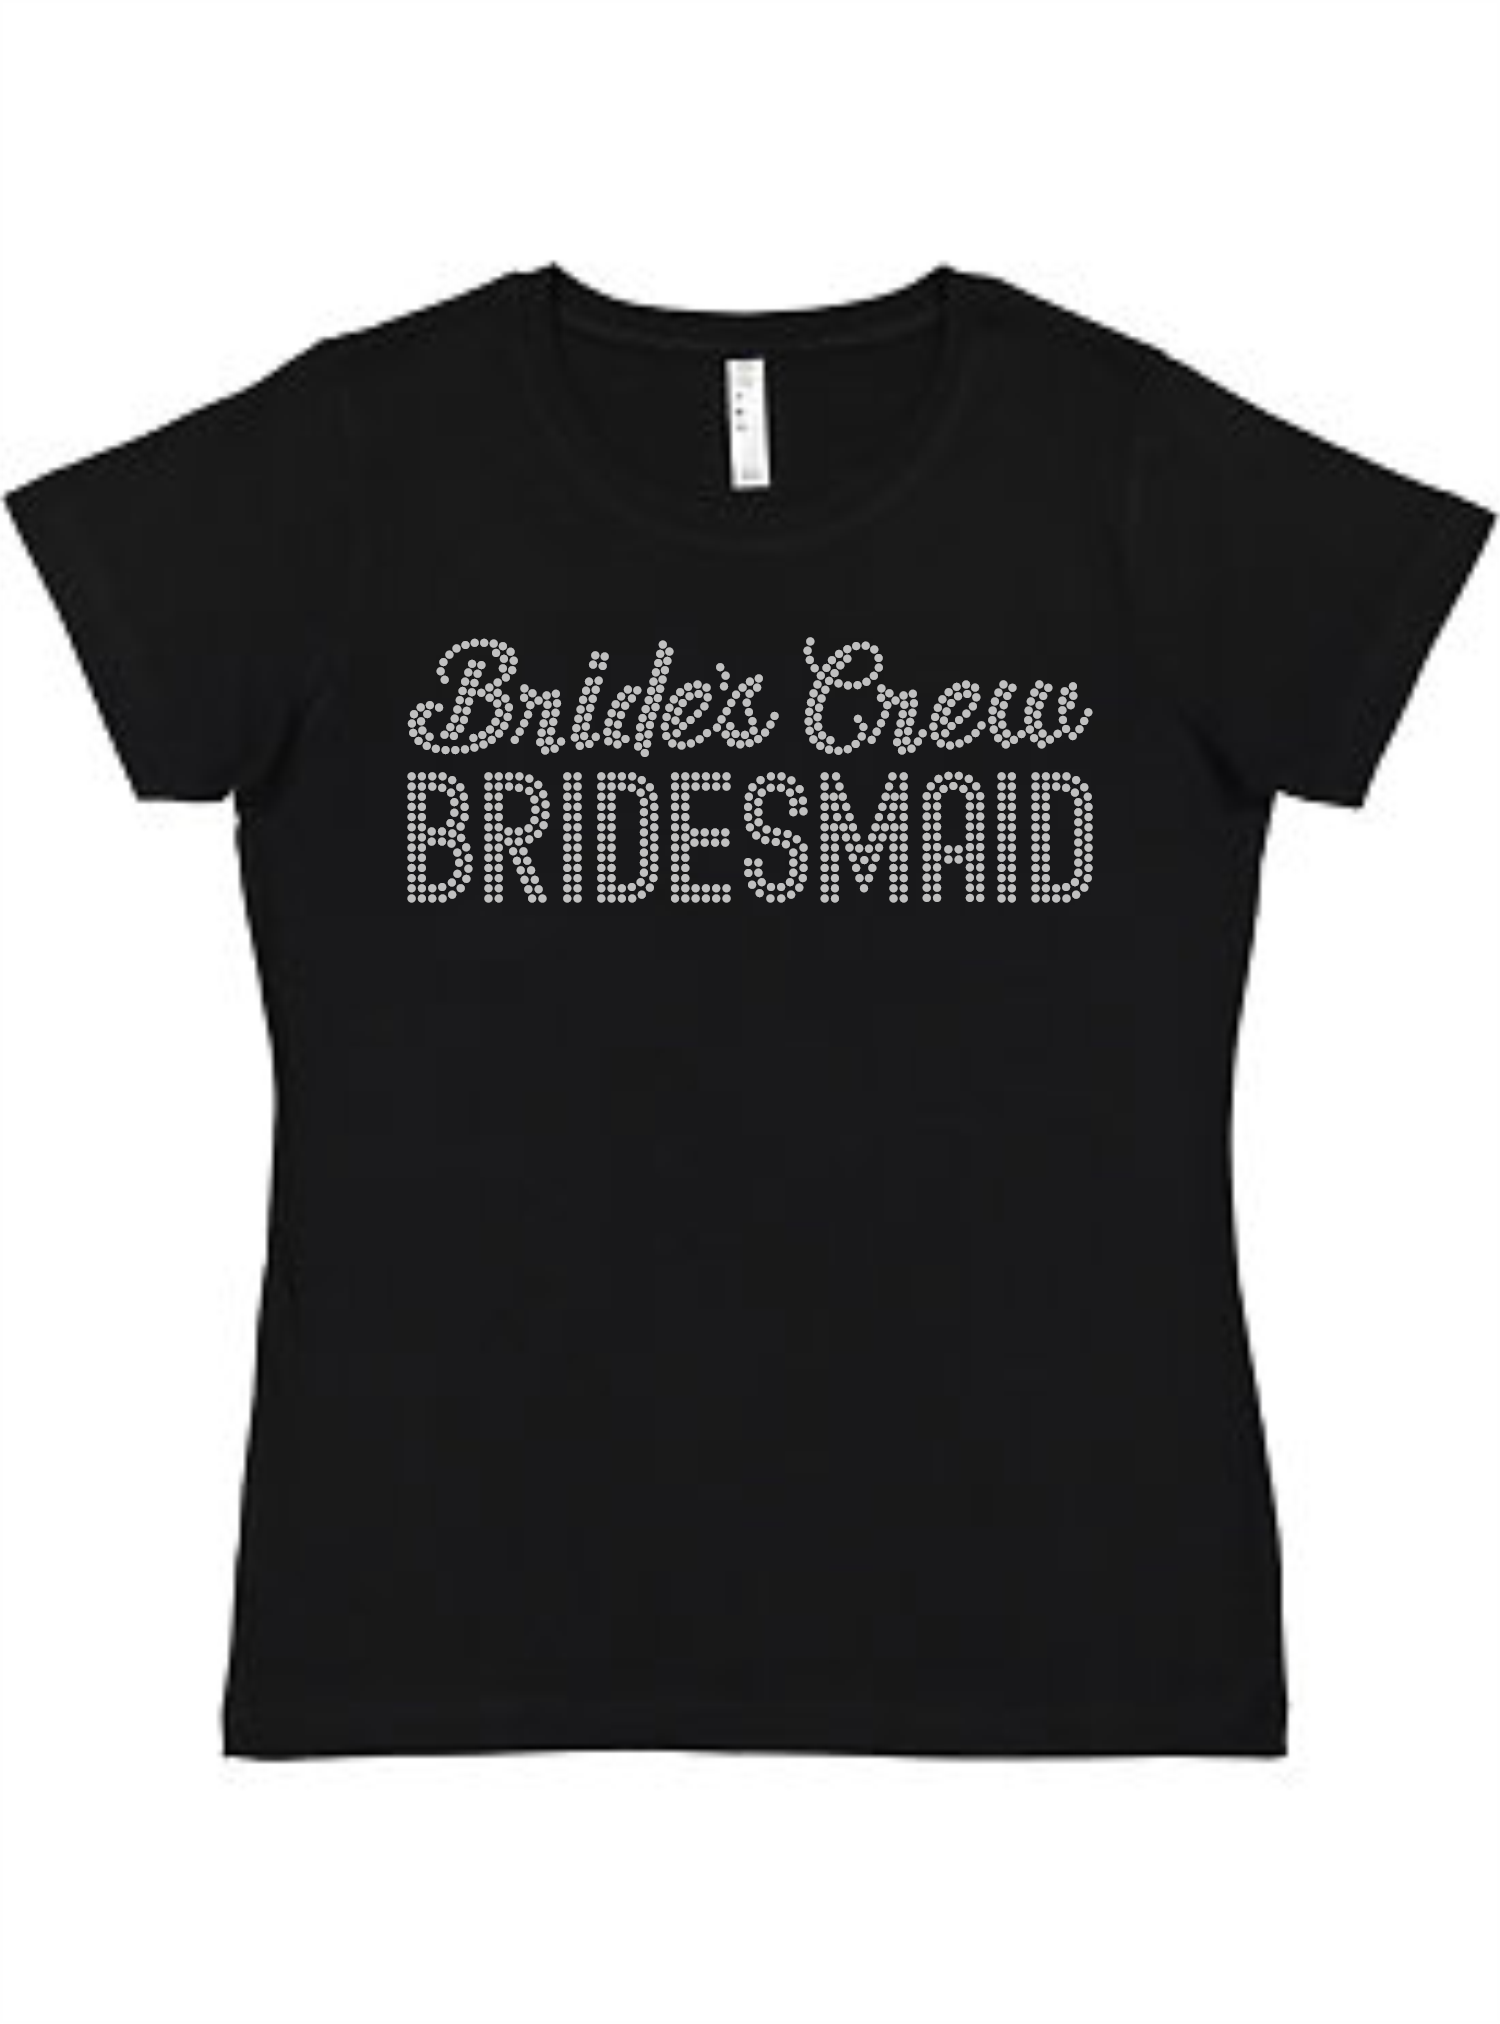 Brides Crew Ladies Tee Ladies Shirt by Akron Pride Custom Tees | Akron Pride Custom Tees